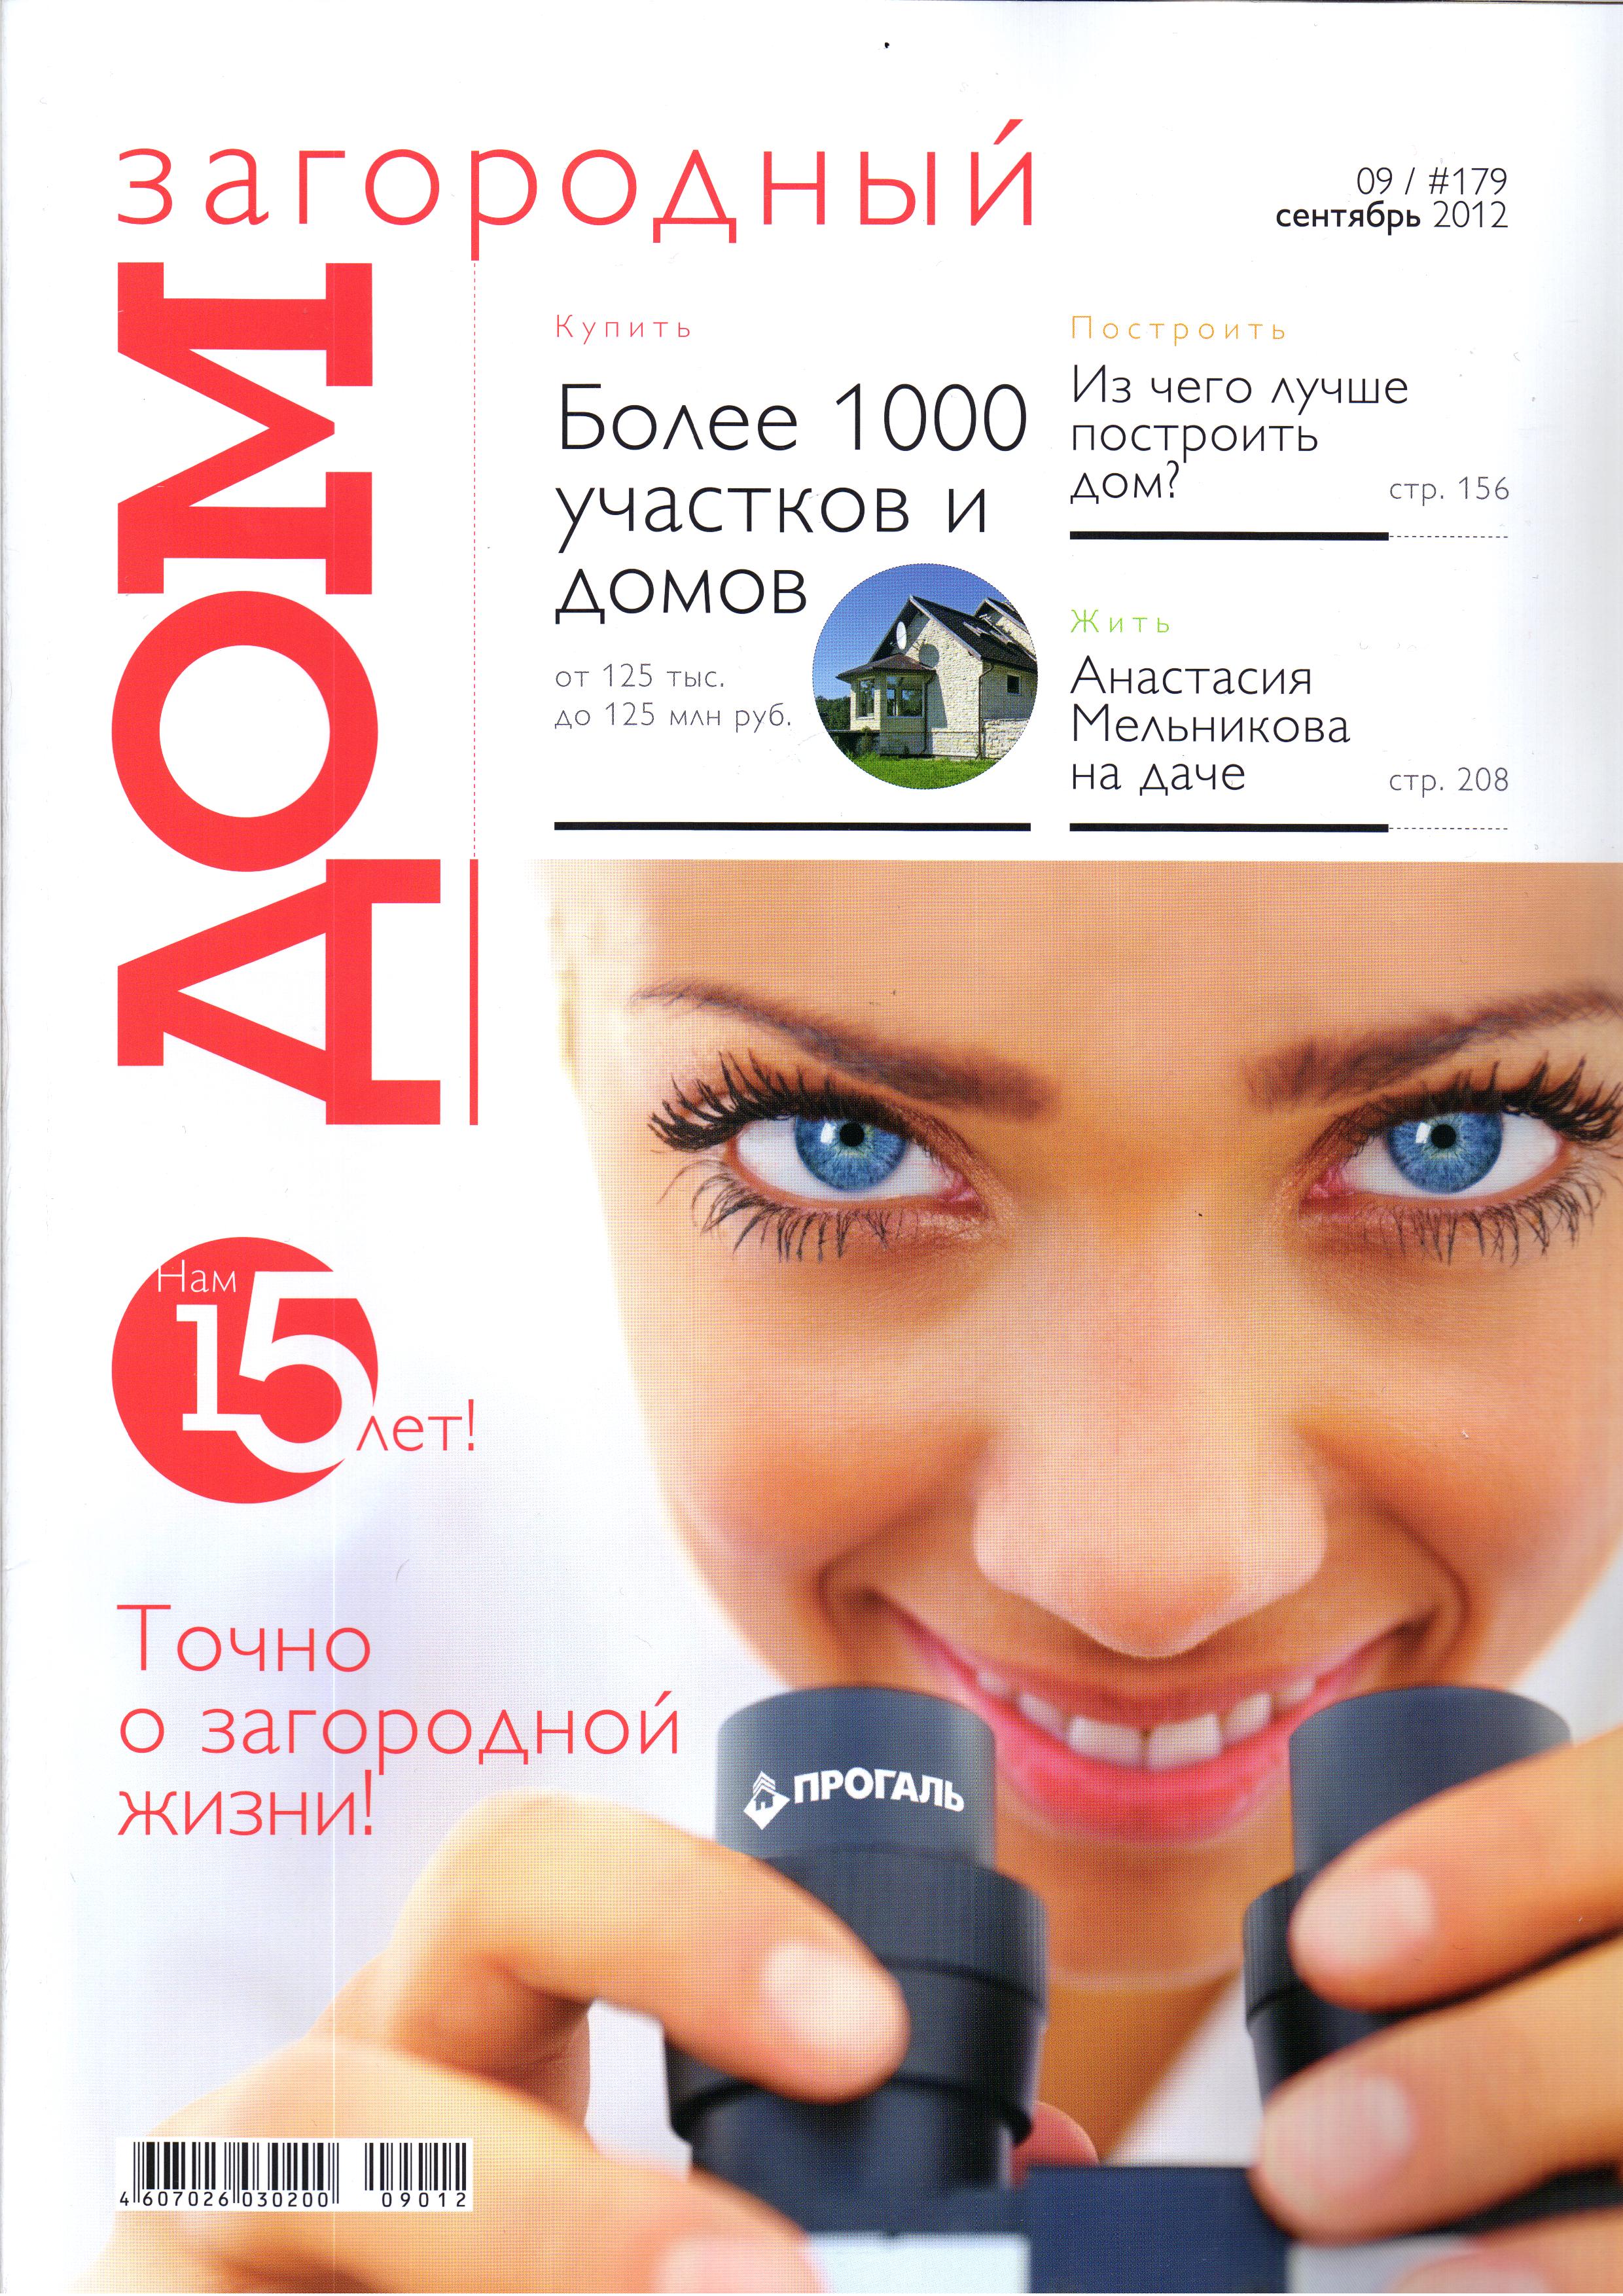 Журнал "Загородный ДОМ" (обложка)